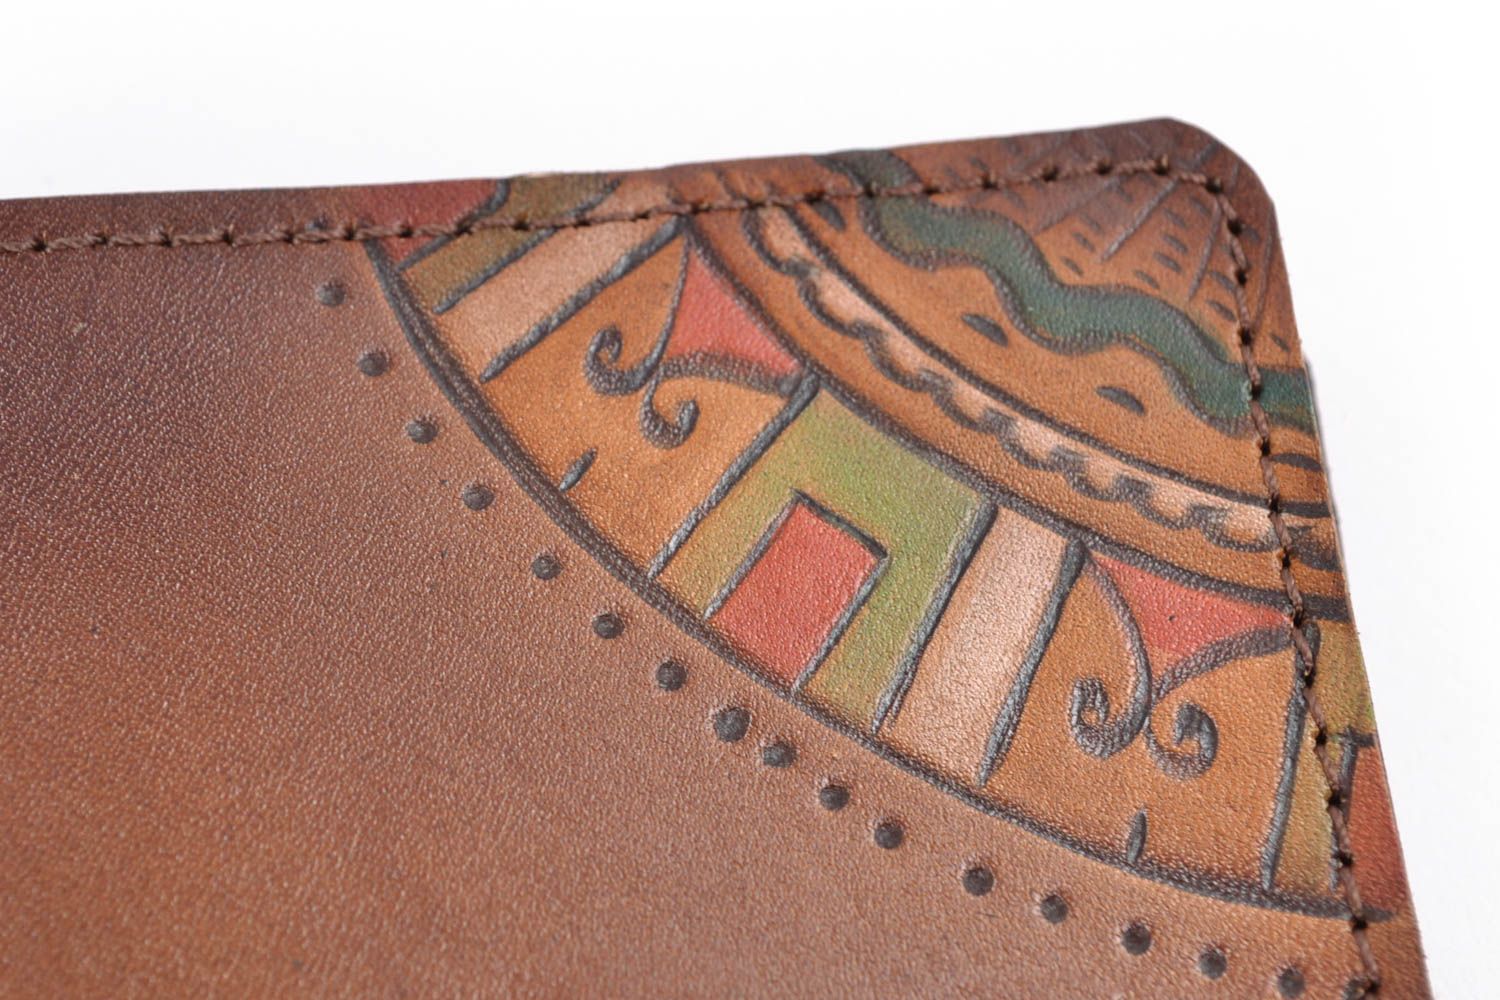 Beau porte-passeport marron en cuir naturel avec peinture style ethnique photo 3